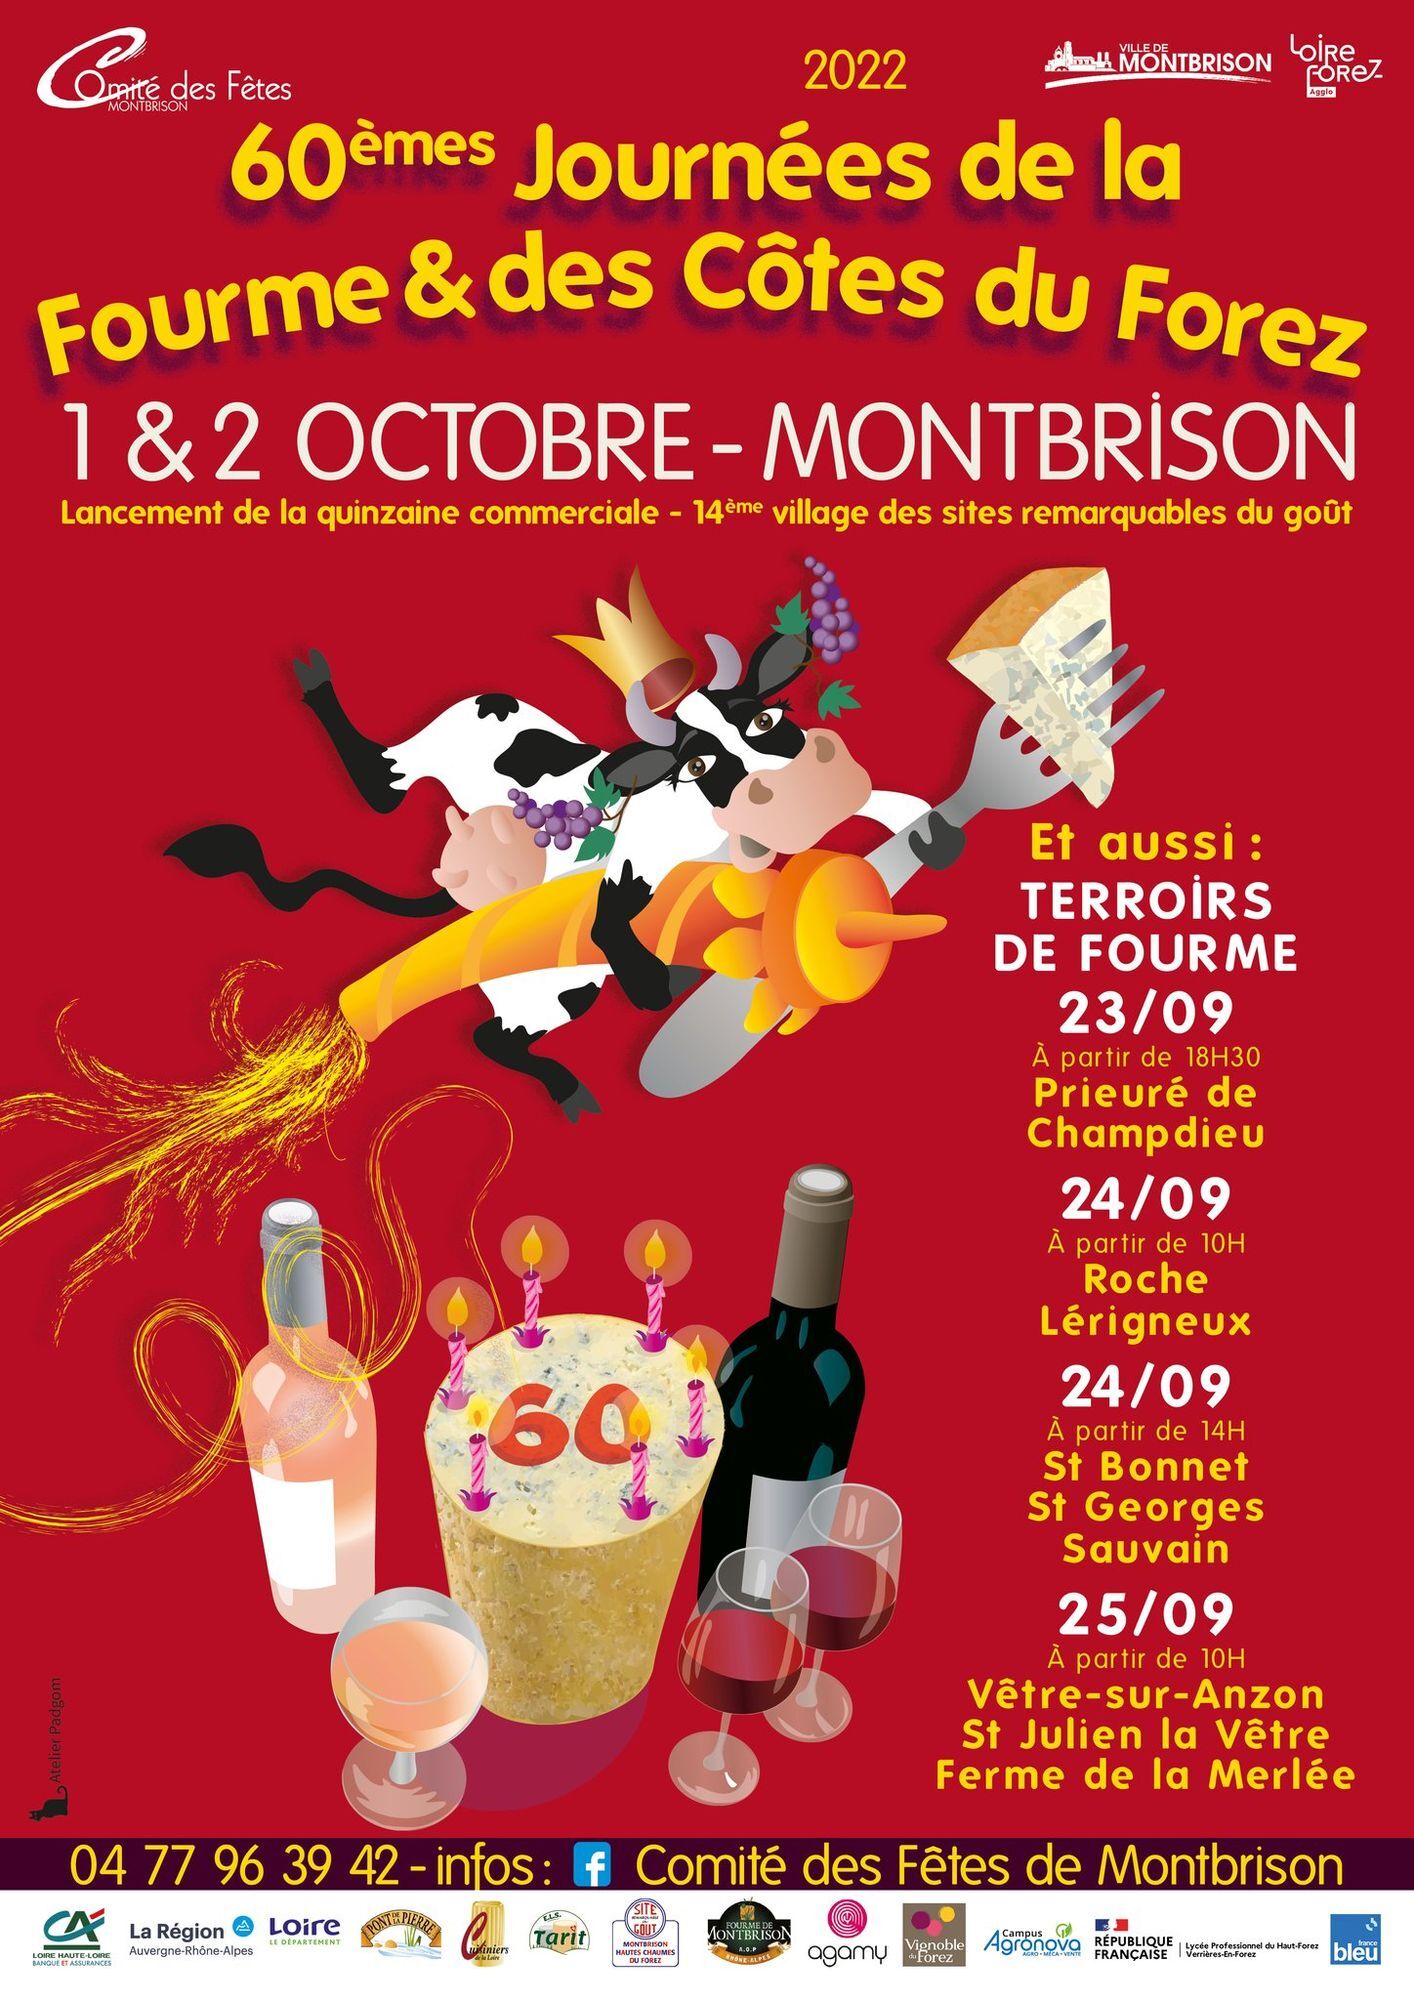 60èmes Journées de la Fourme de Montbrison et des Côtes du Forez